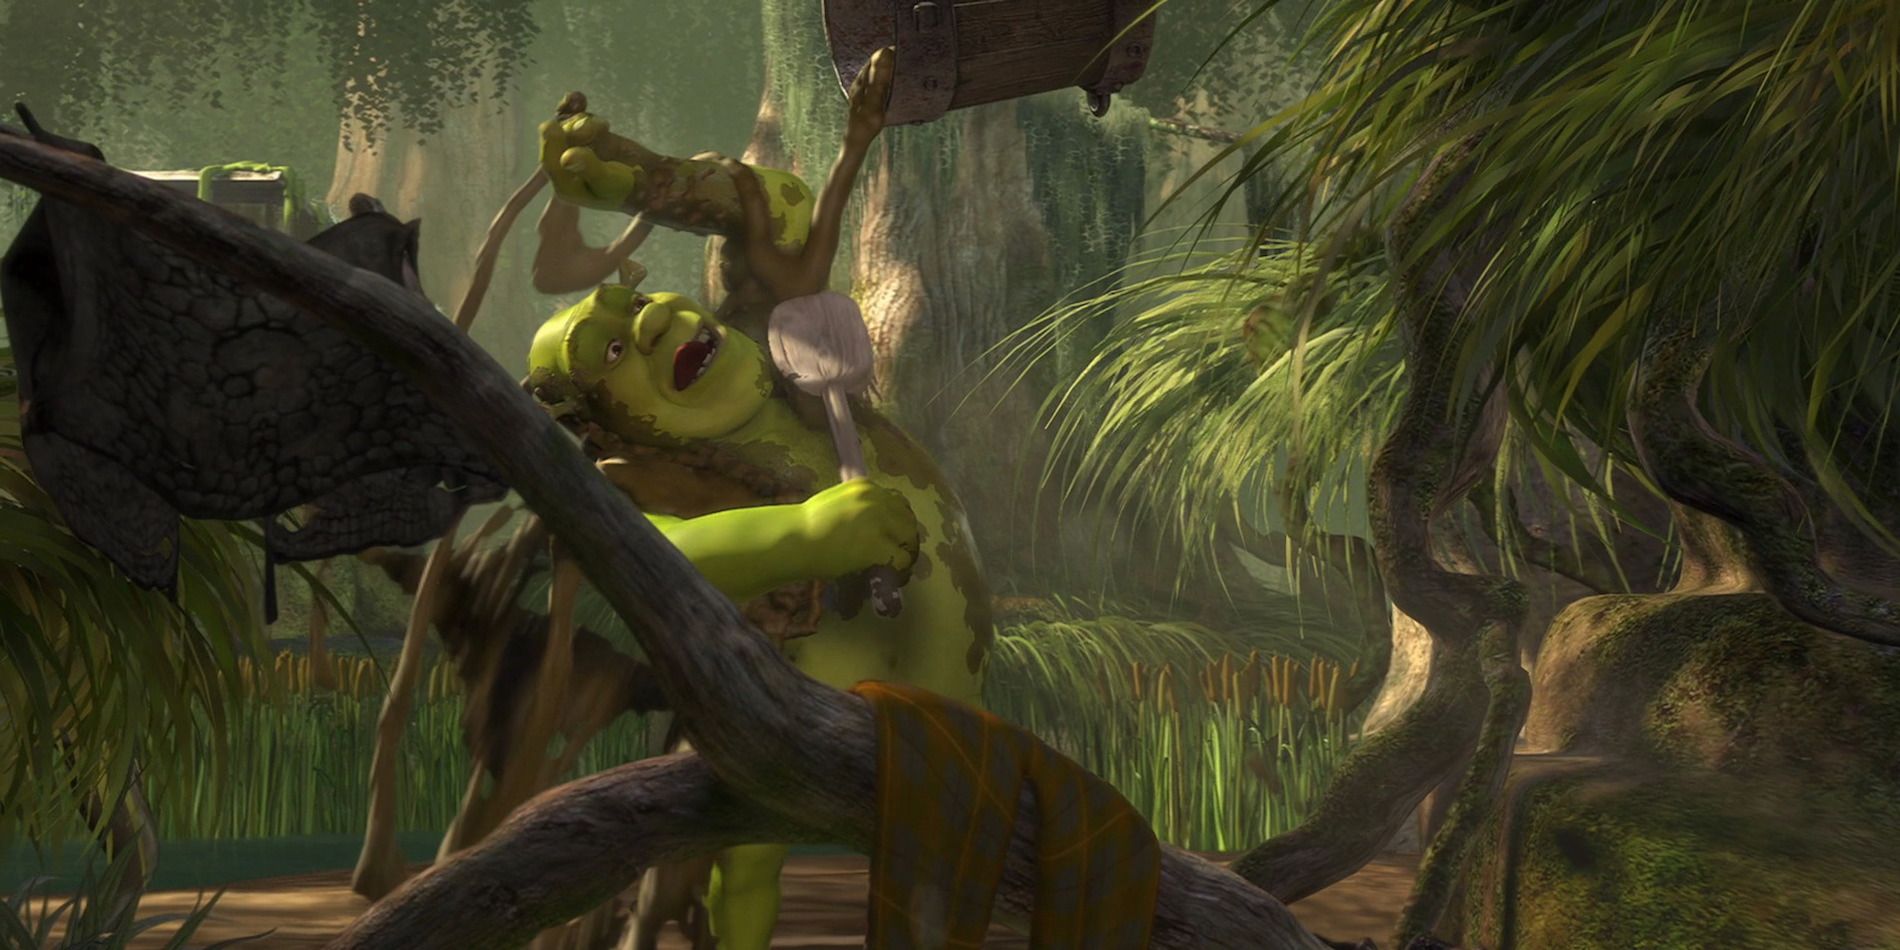 Shrek tomando banho de lama no filme Shrek original.